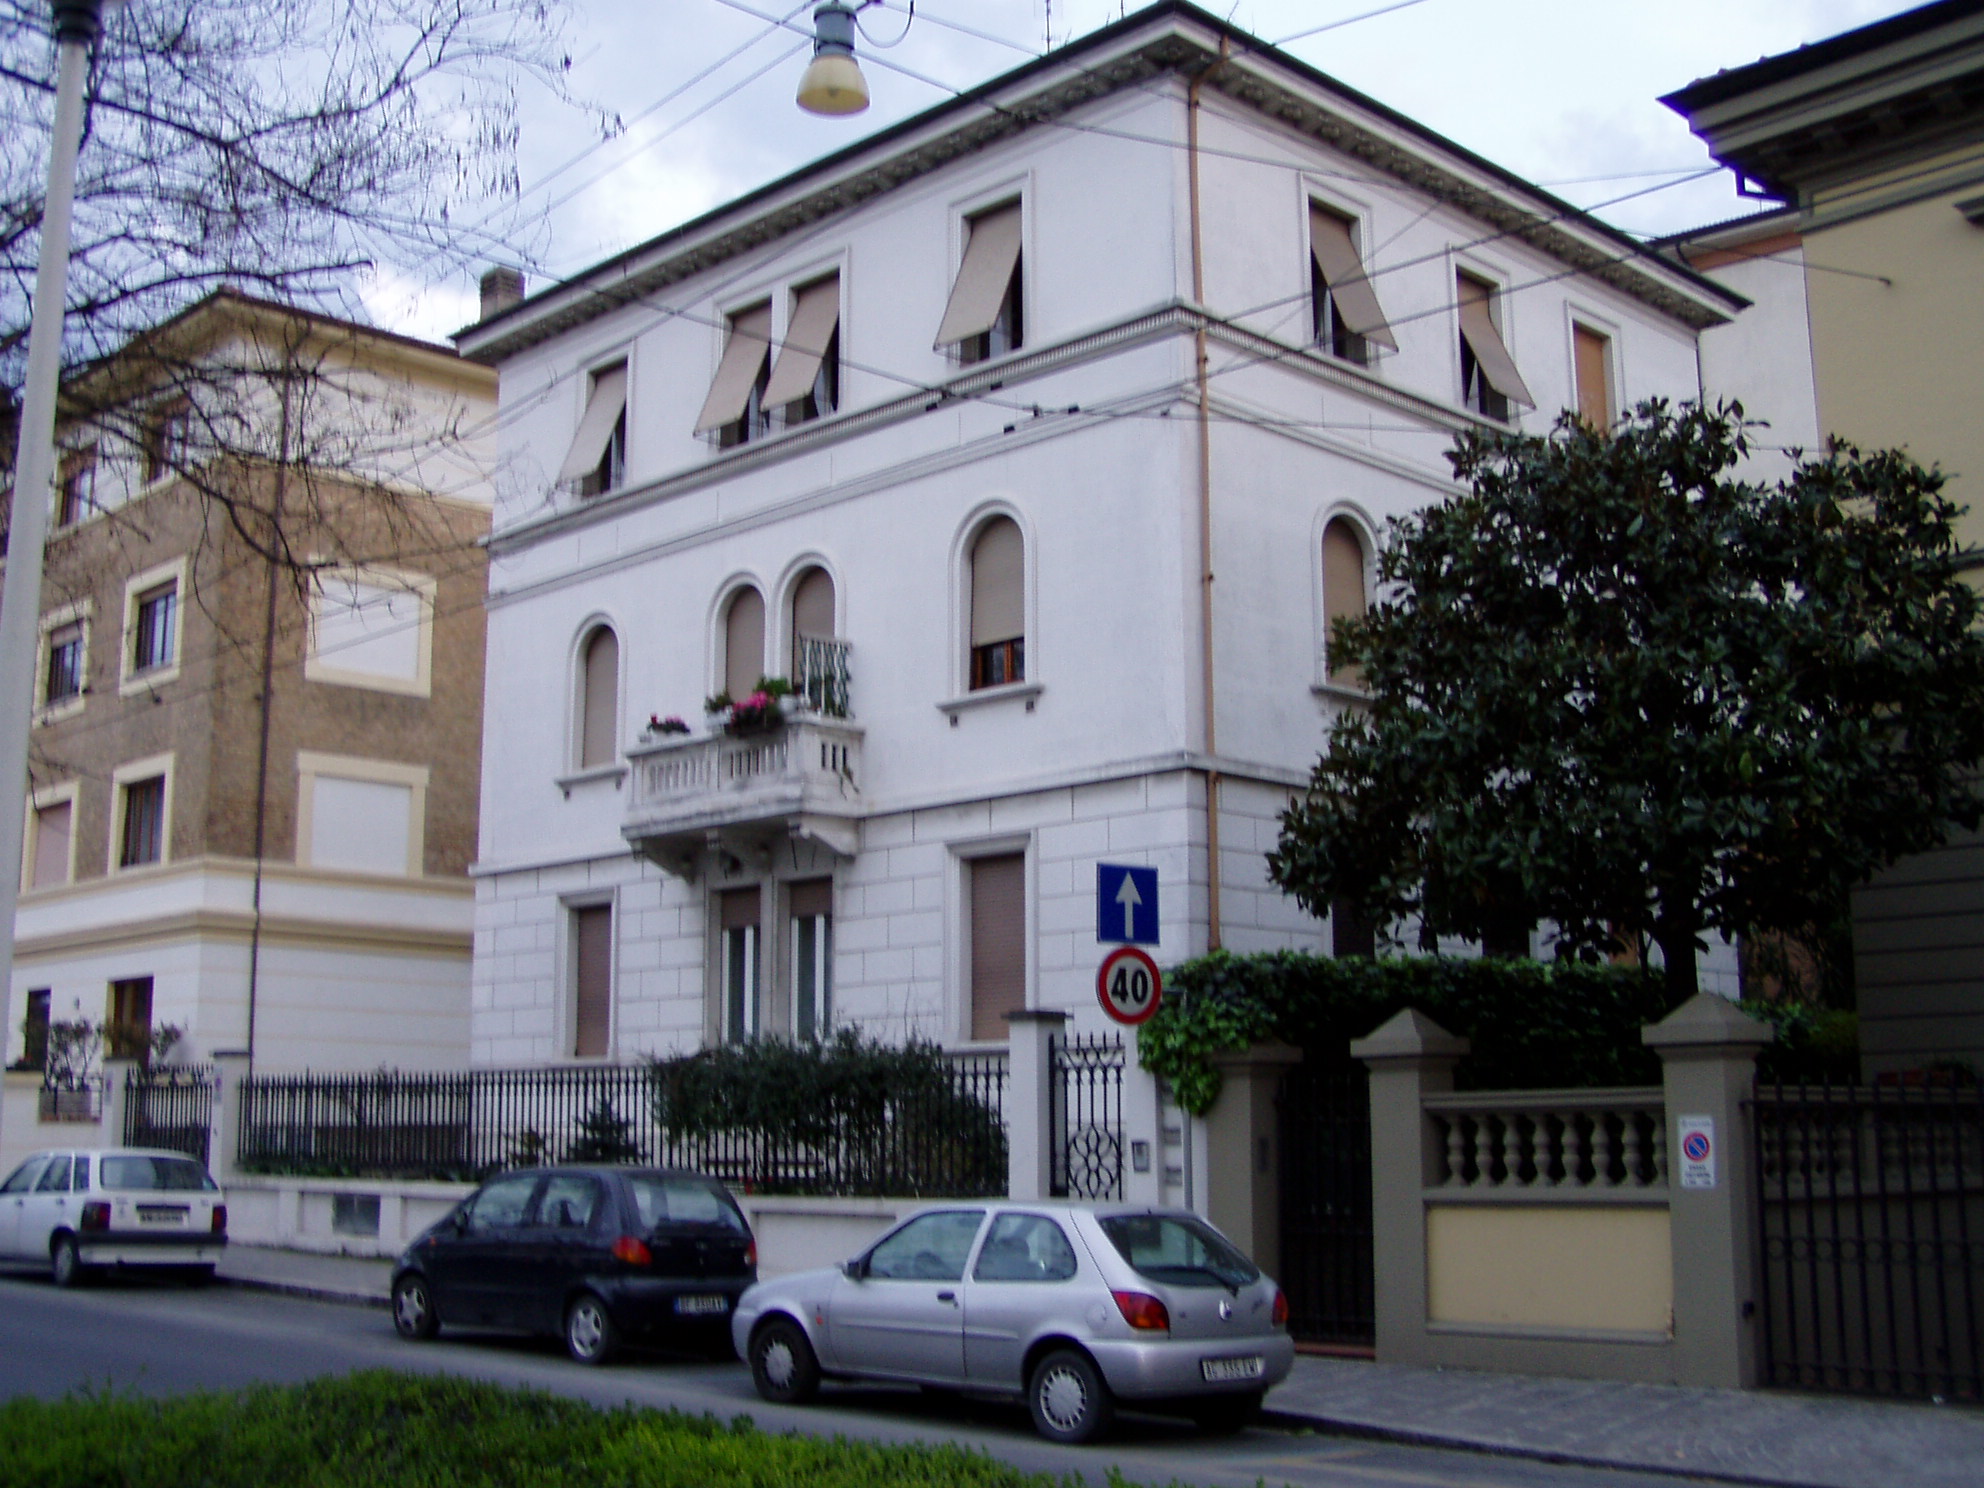 Palazzetto in stile neoclassico (villino) - Ancona (AN) 